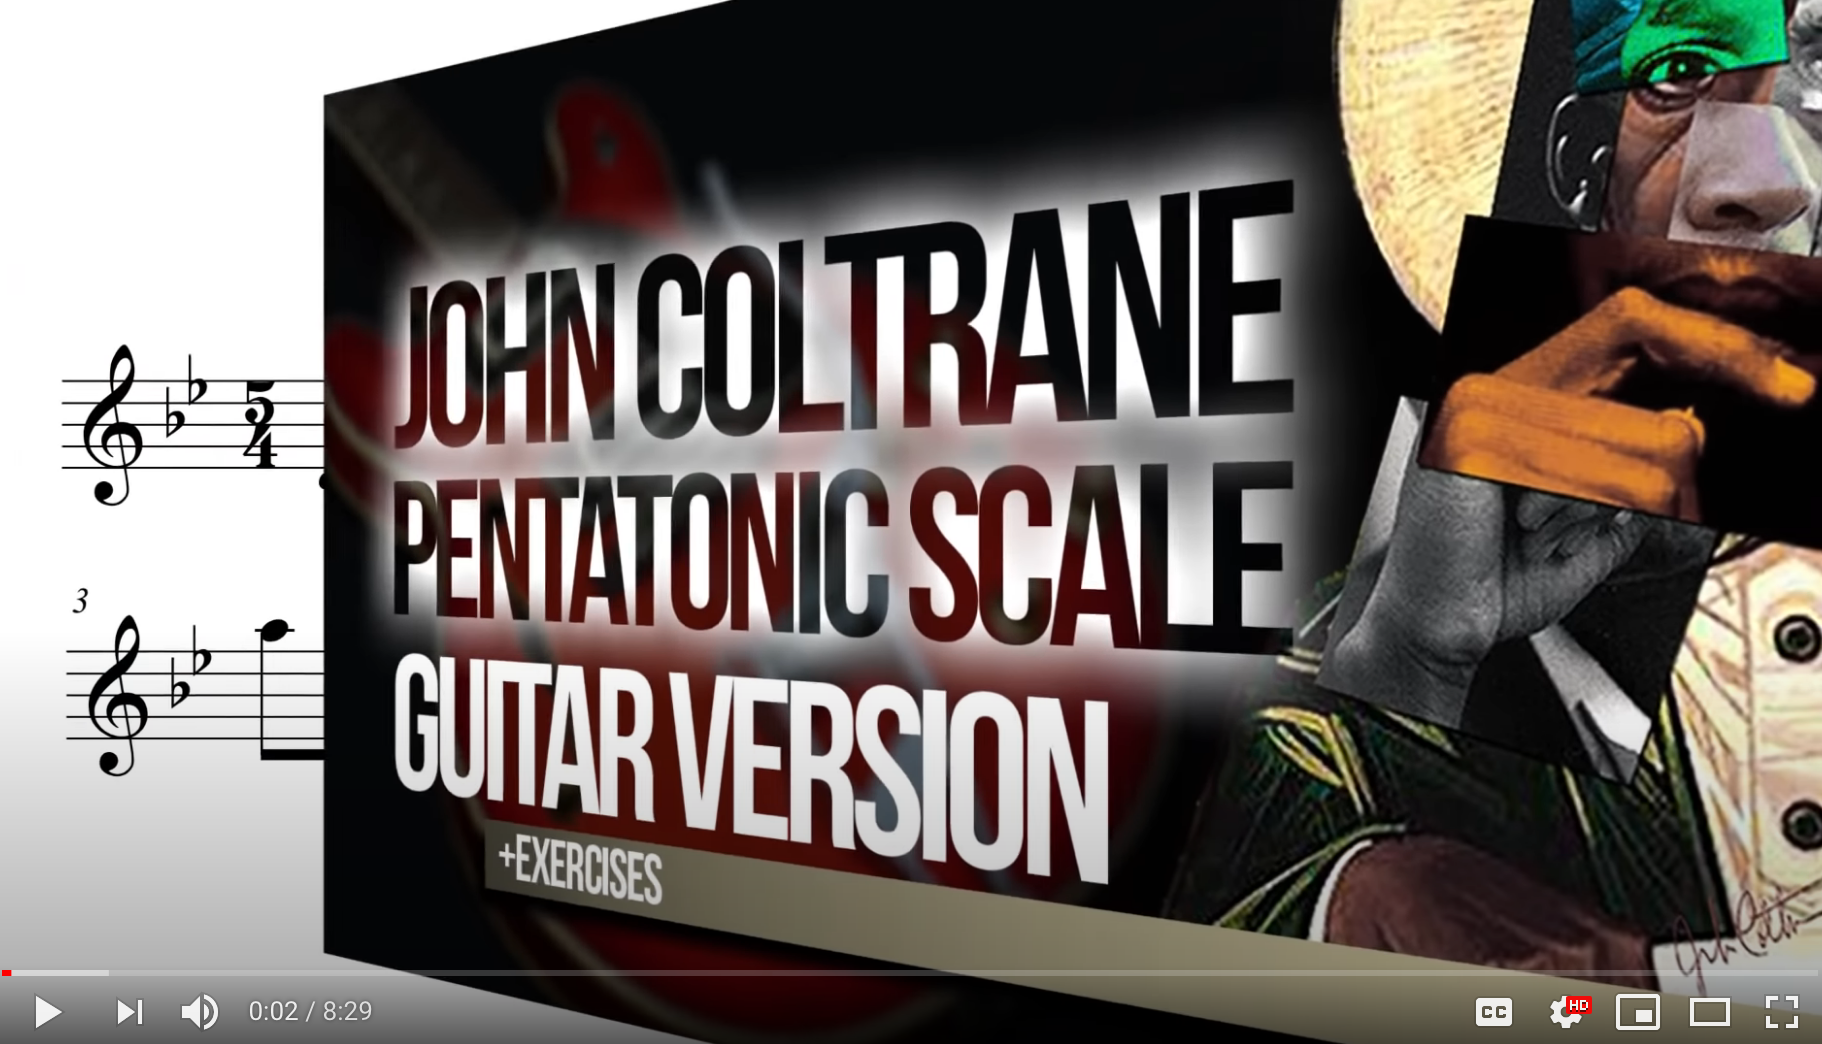 The John Coltrane Pentatonic guitar version